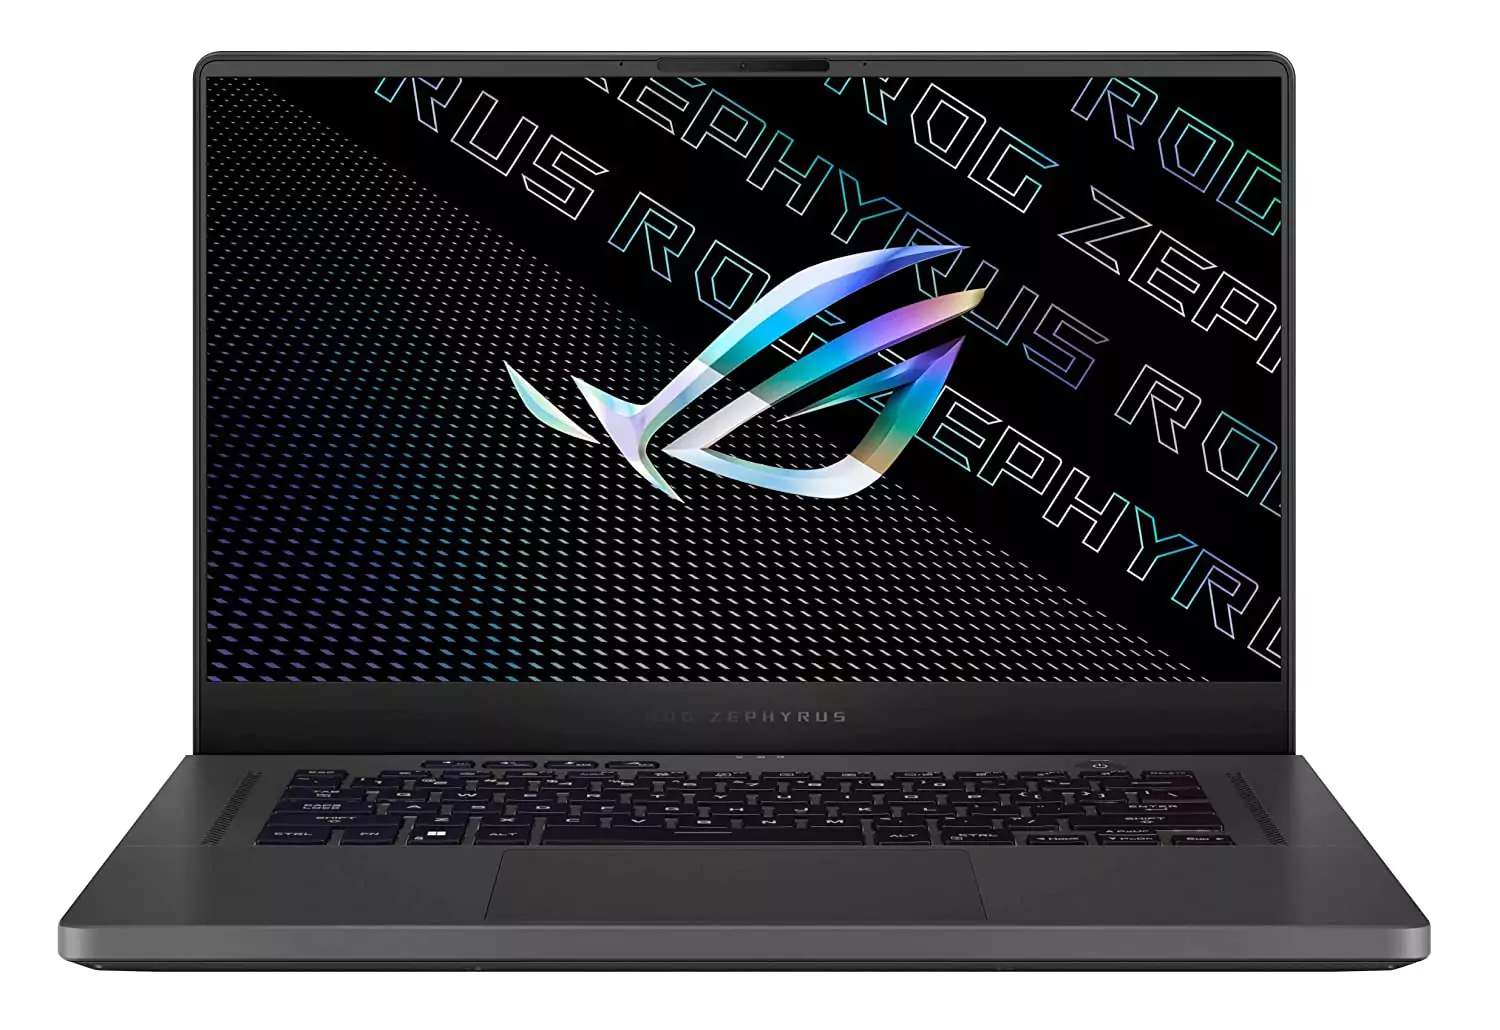 Asus ROG Zephyrus G15 digital nomad laptop for travel